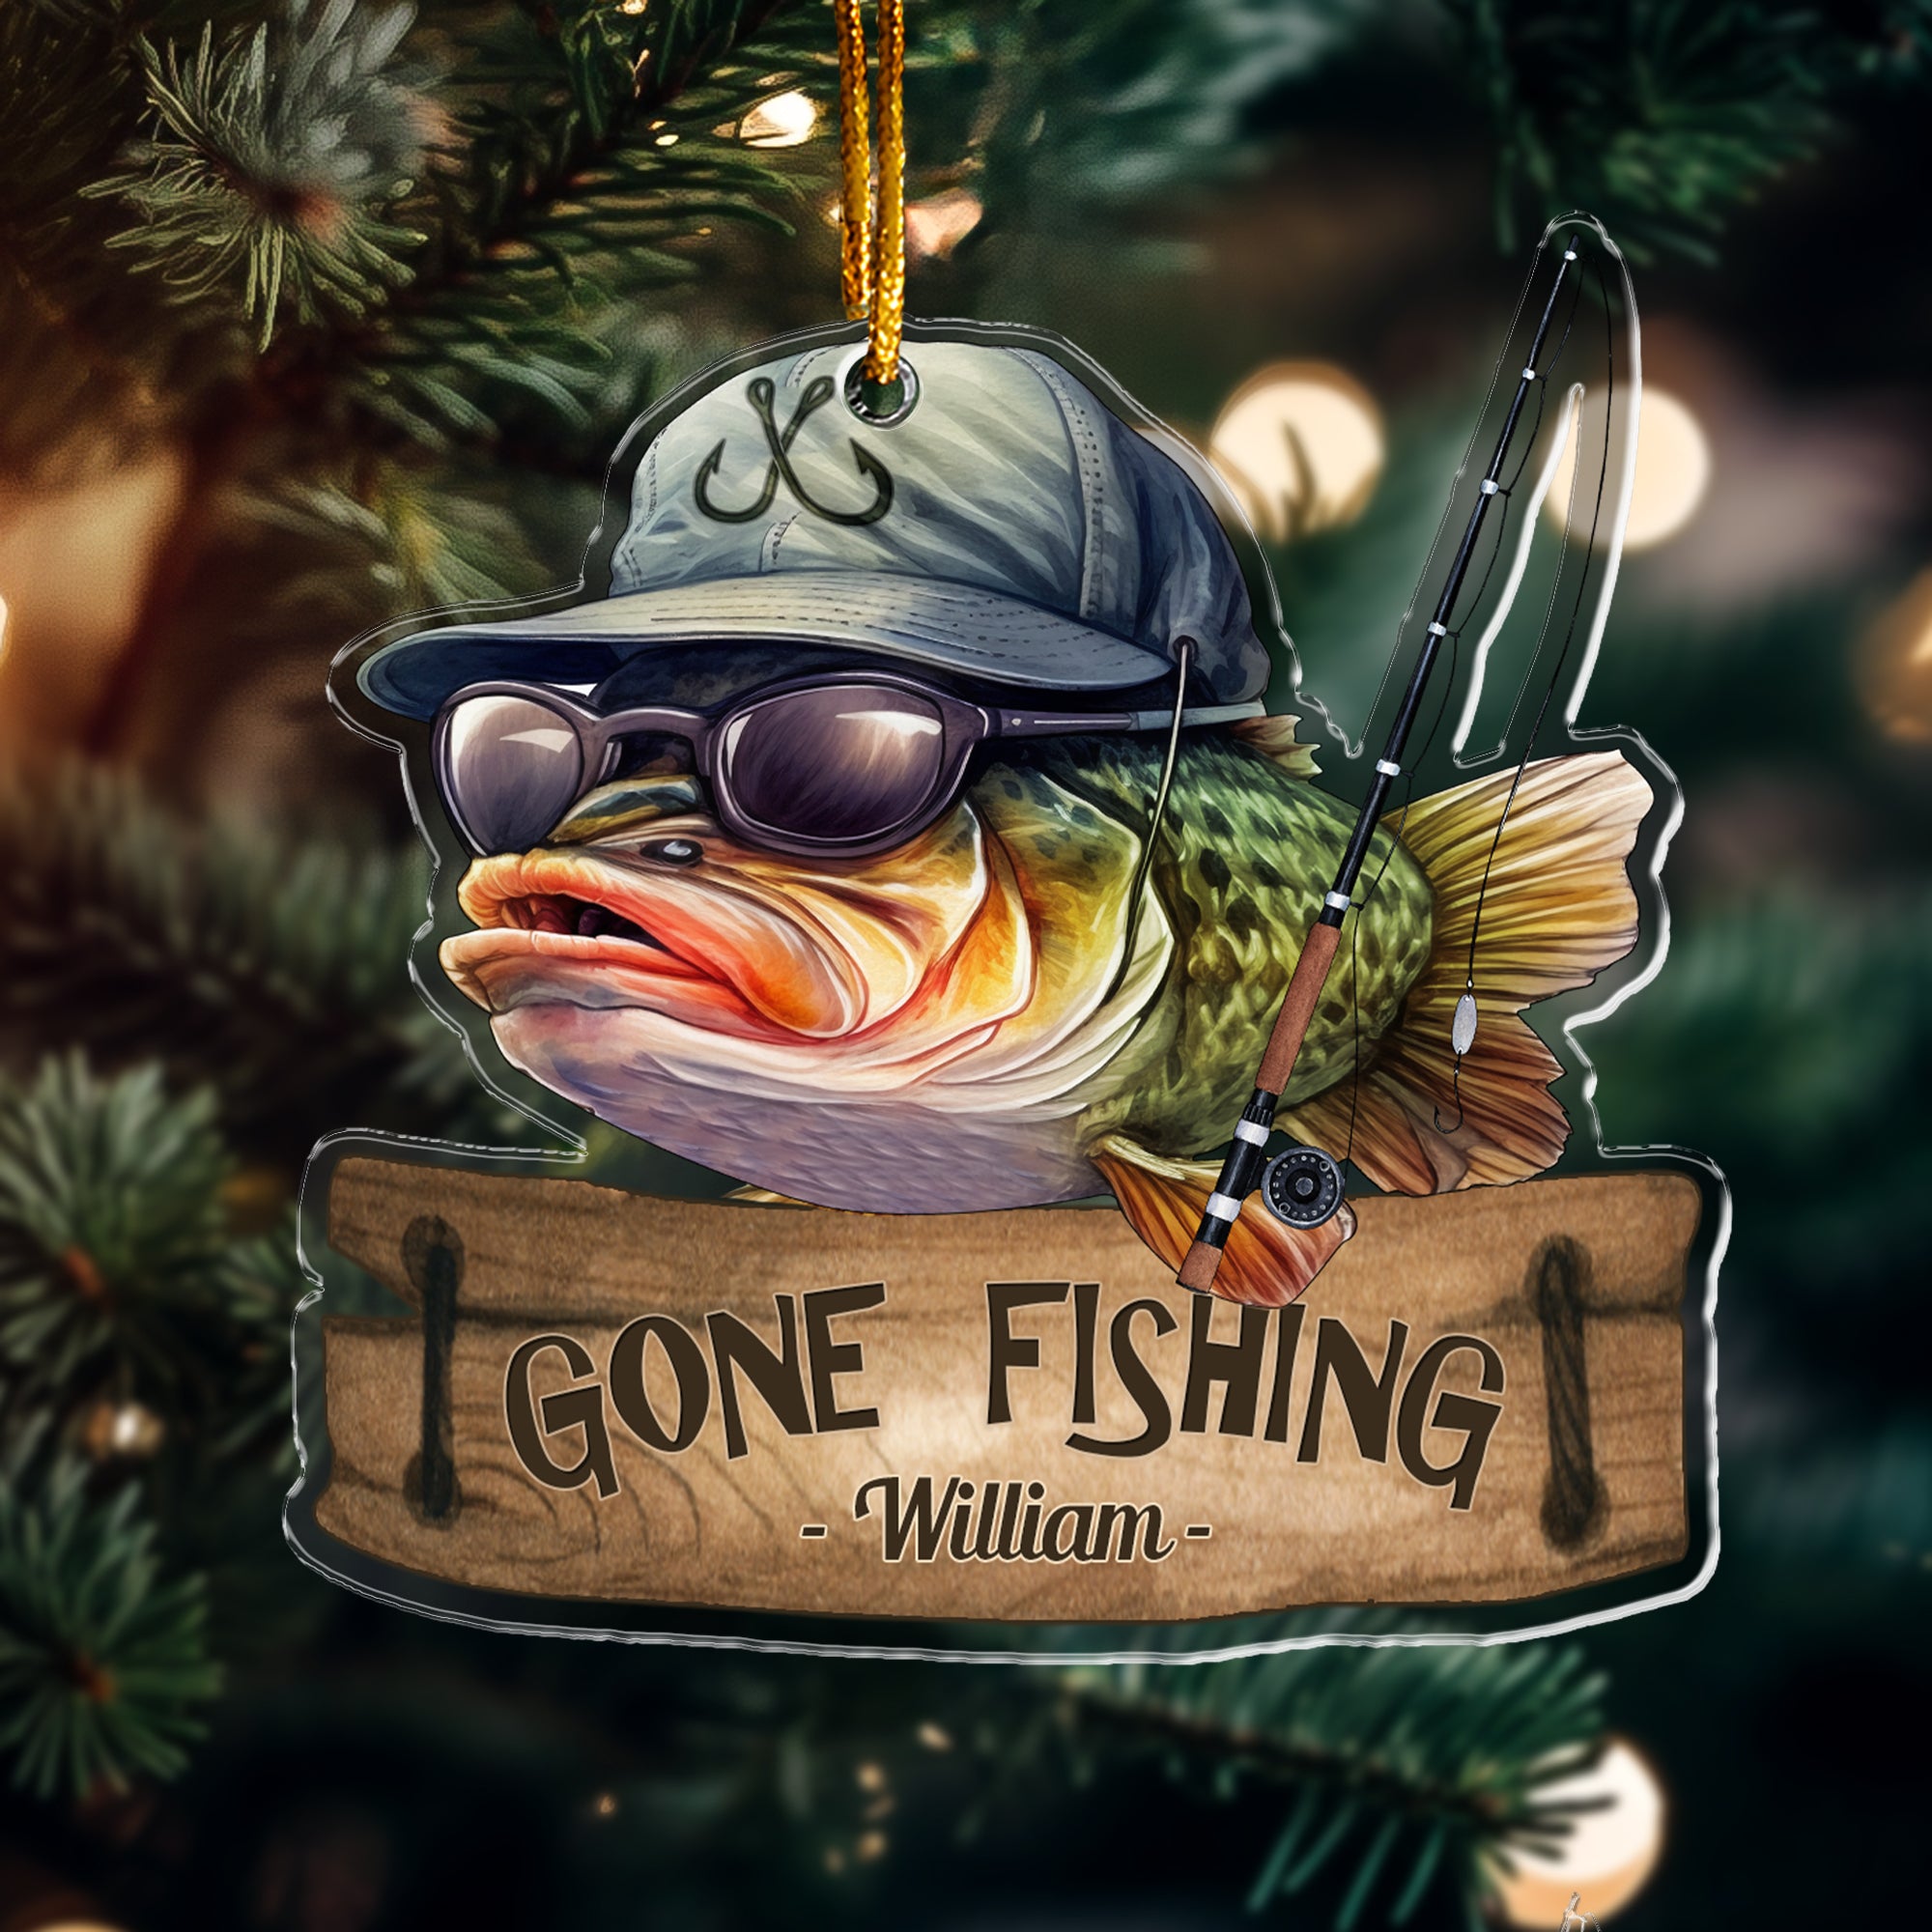 Gone Fishing Fishing Bass Fish Fisherman - Personalized Acrylic Ornament